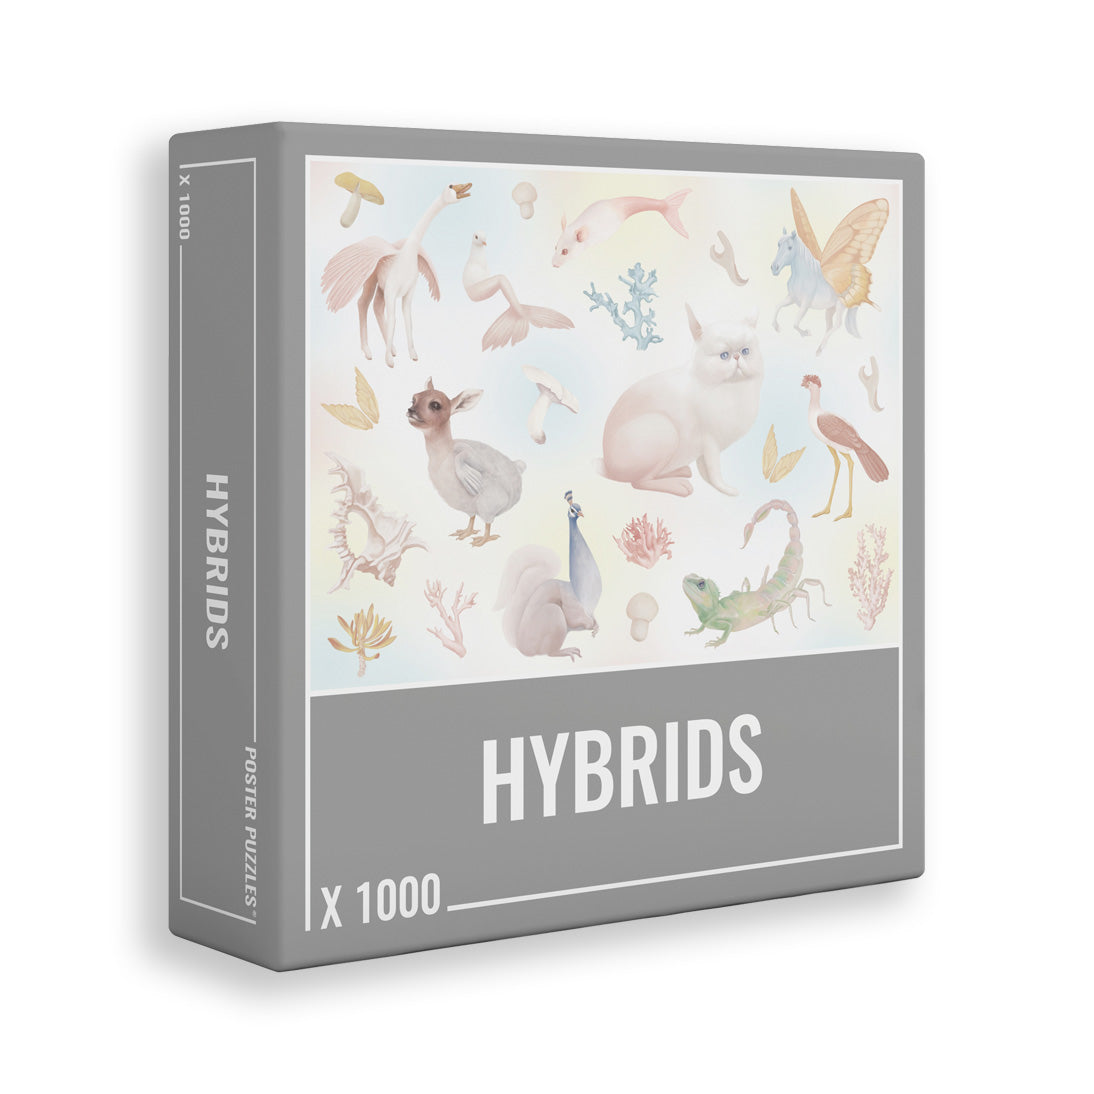 Hybrids | 1,000 Piece Jigsaw Puzzle